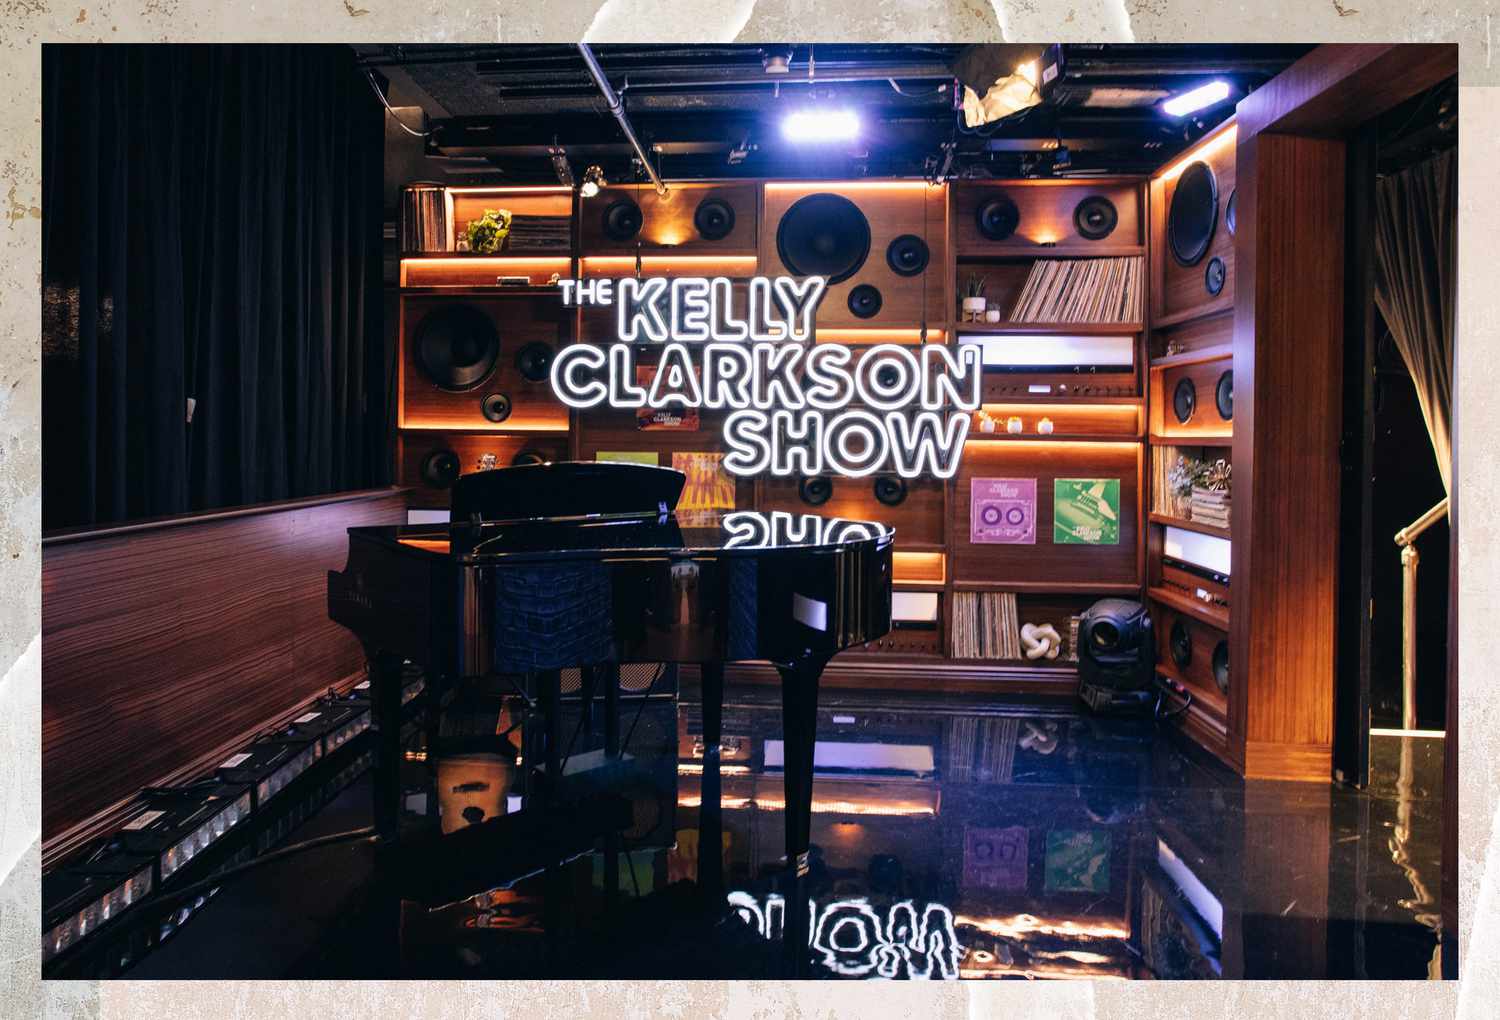 O piano de cauda de bebê de Kelly Clarkson no cenário de seu programa de entrevistas